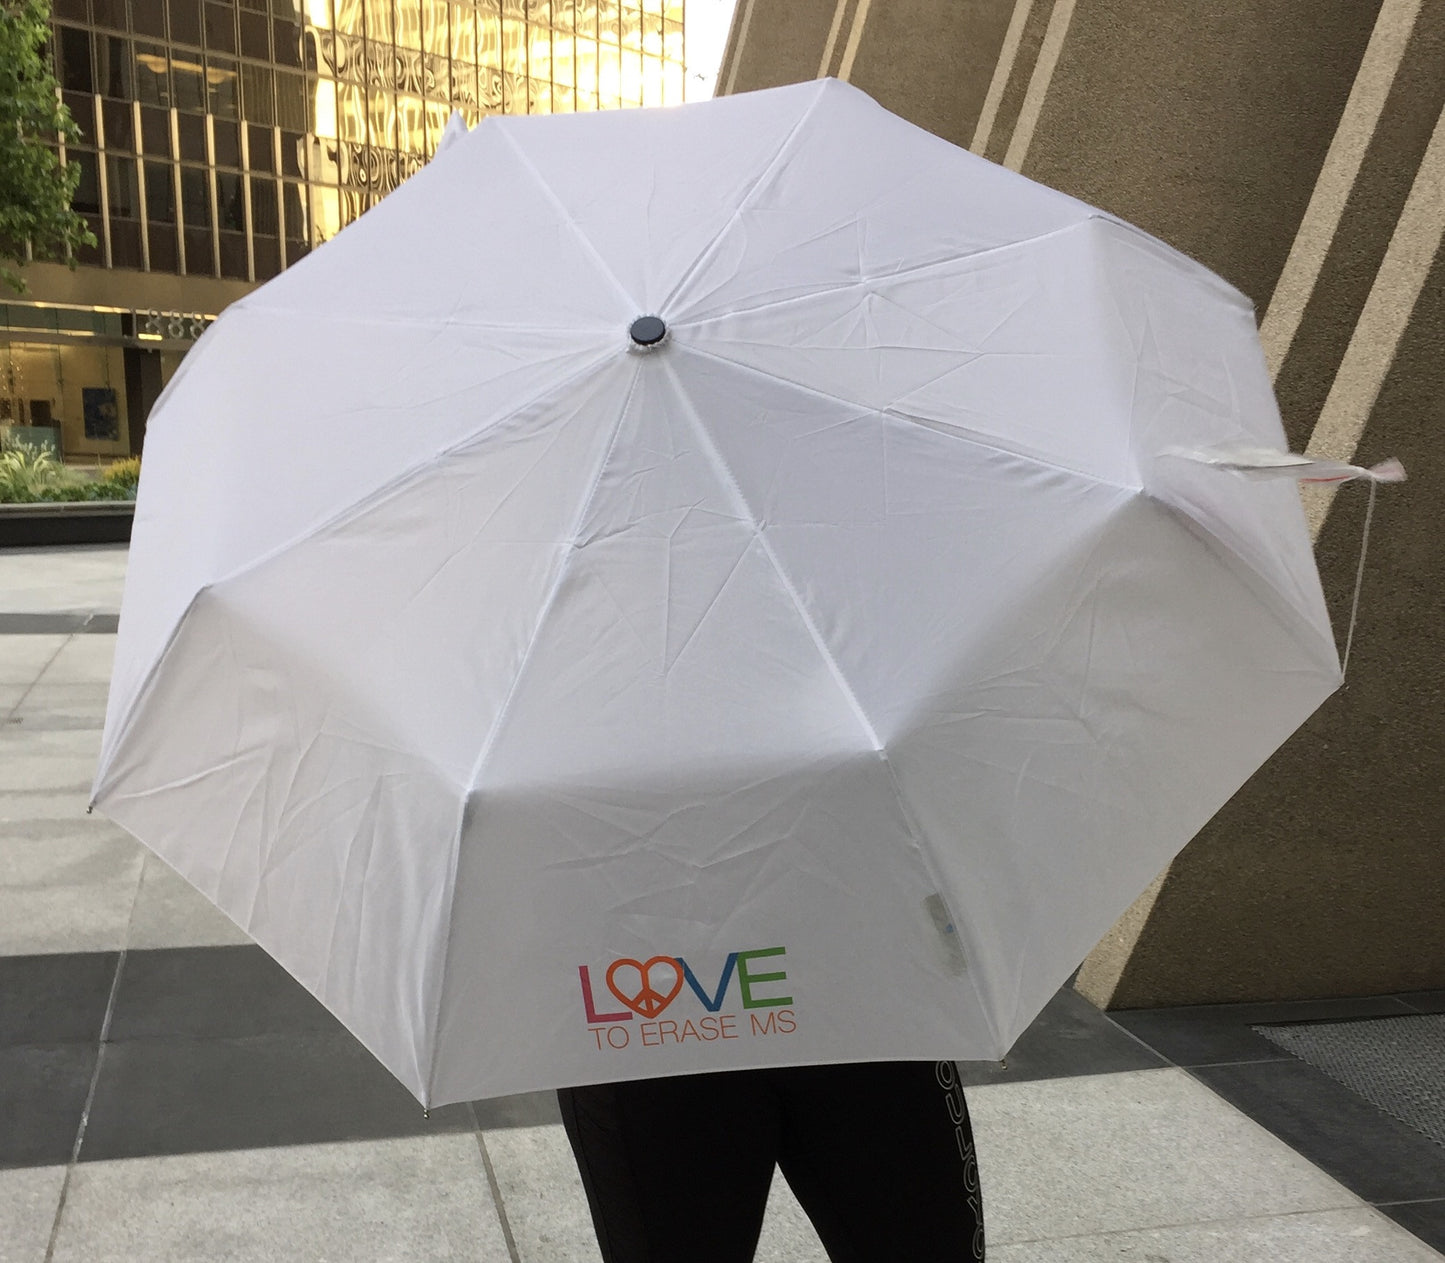 LOVE to Erase MS Umbrella